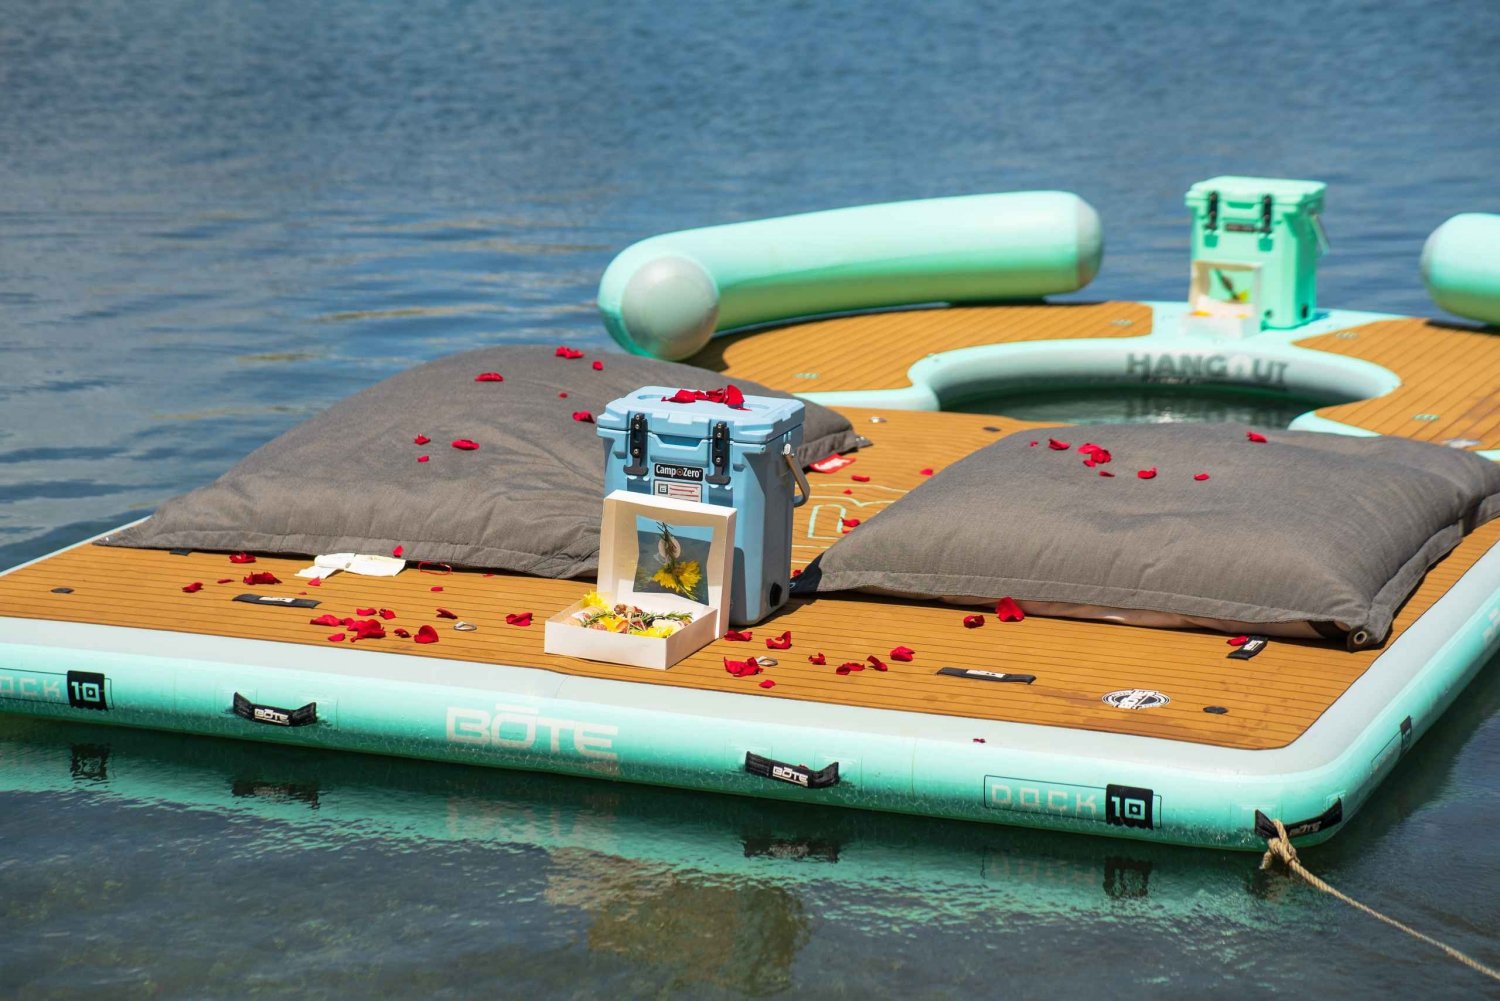 Condado: Ingresso al Lagoon Hangout Deck con bevande da acquistare